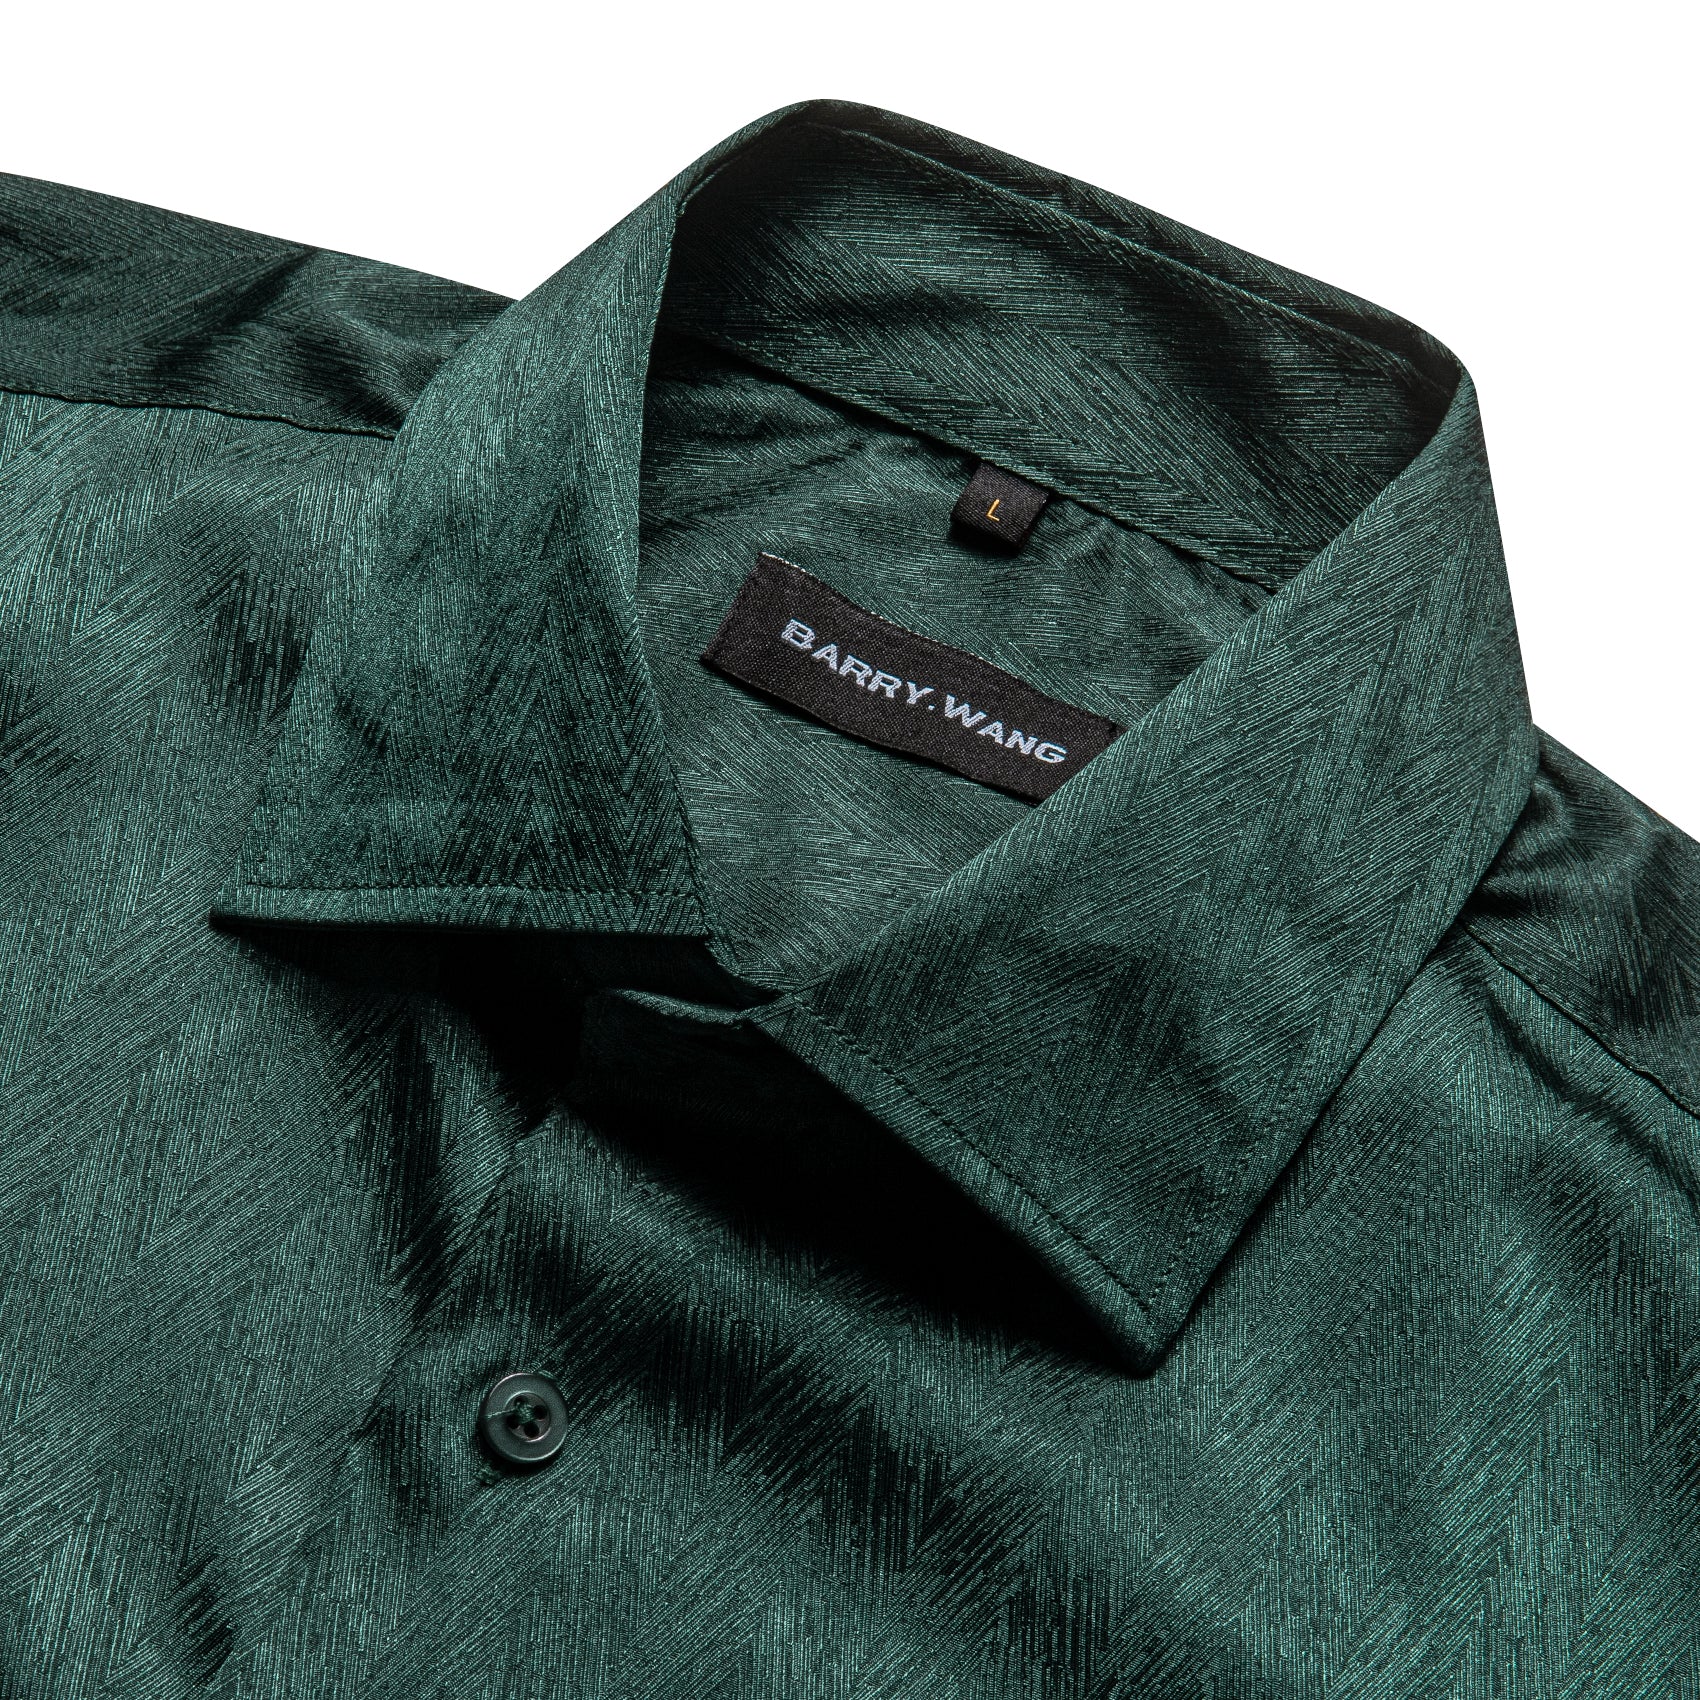 Barry.Wang Button Down Shirt Classy Green Solid Silk Men's Long Sleeve Shirt Business